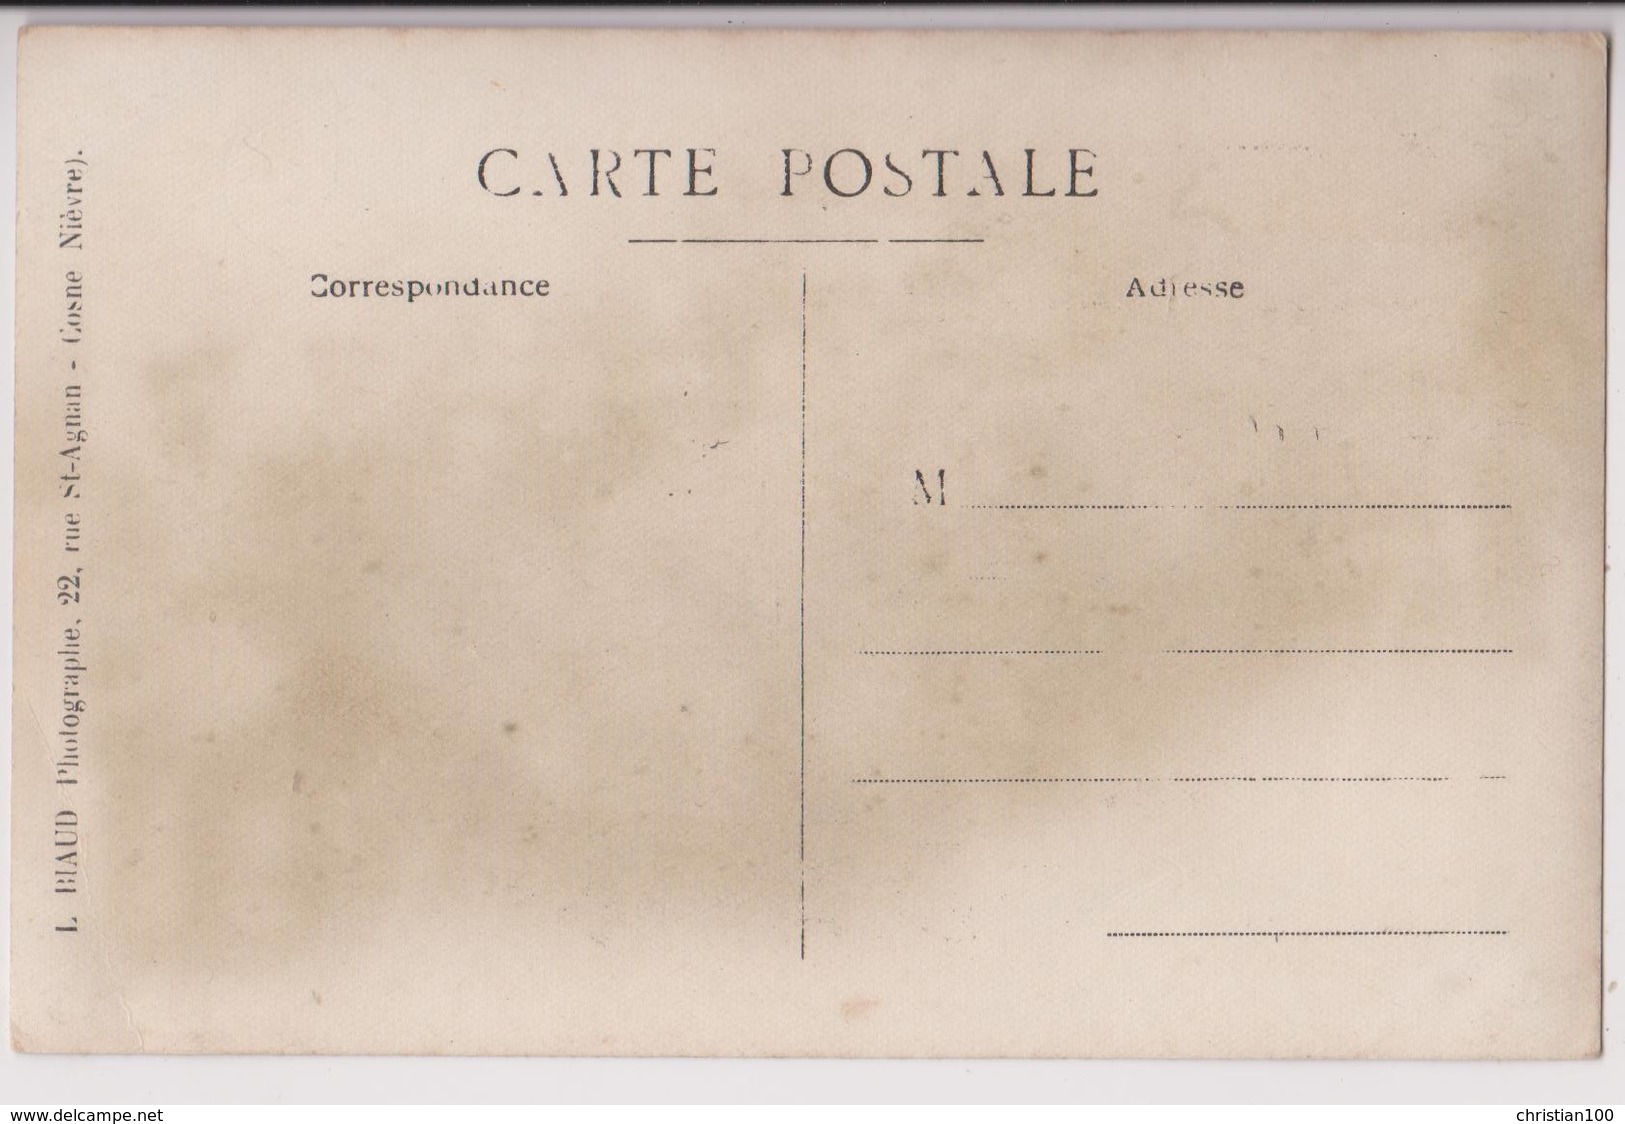 CARTE PHOTO L. BIAUD 22 RUE SAINT AGNAN COSNE - CONSCRITS DE LA CLASSE 1920 - FANFARE TAMBOURS ET ACCORDEON  - 3 SCANS - - Cosne Cours Sur Loire